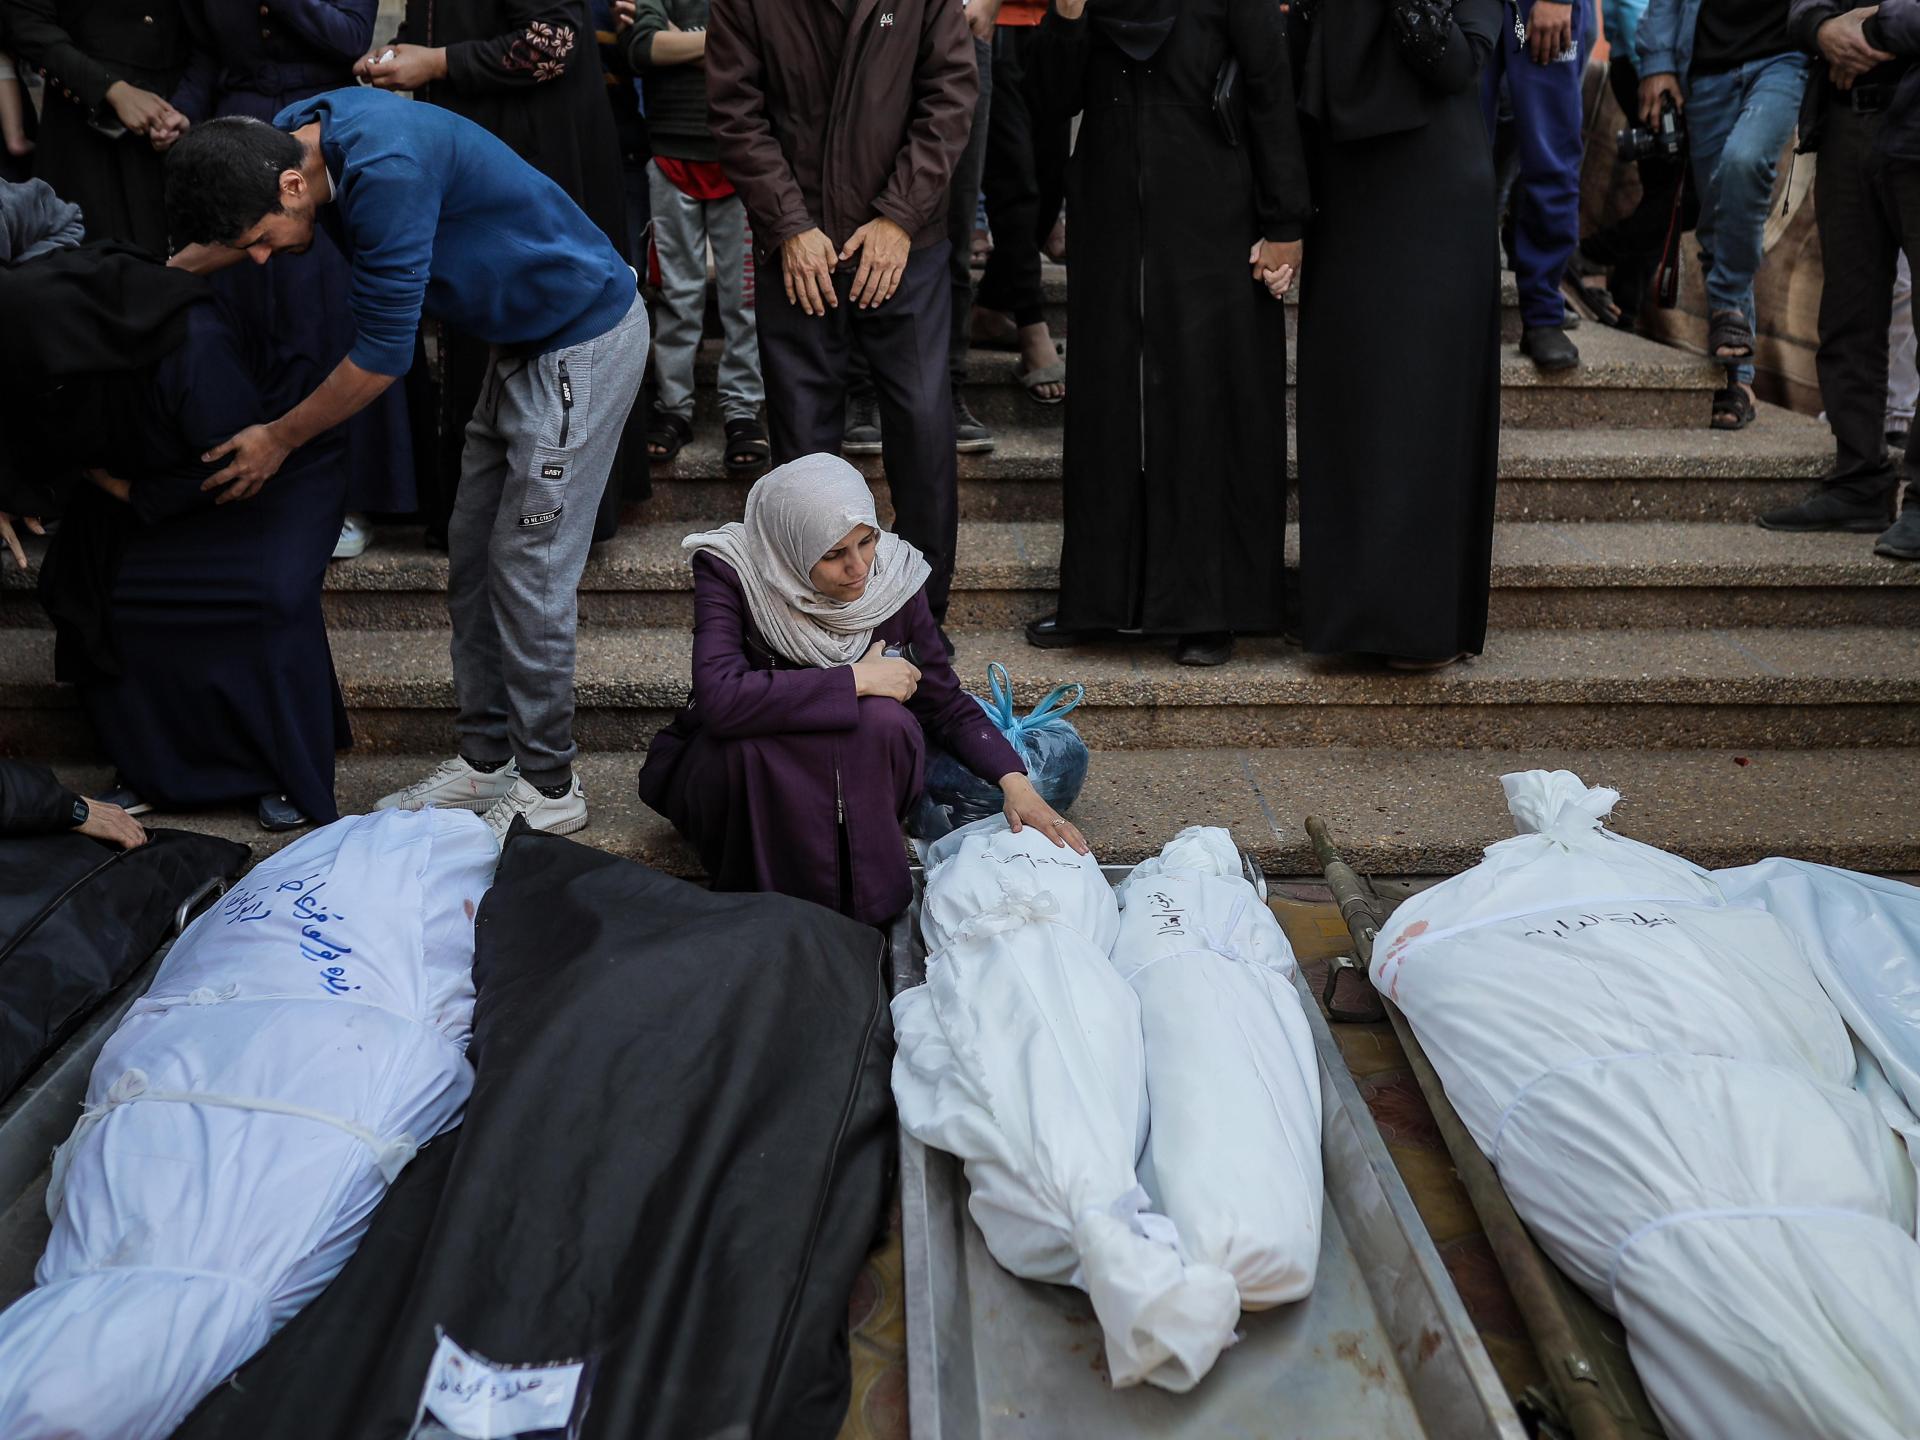 حكومة غزة تتهم إسرائيل بسرقة أعضاء من جثامين شهداء وتدعو لتحقيق دولي